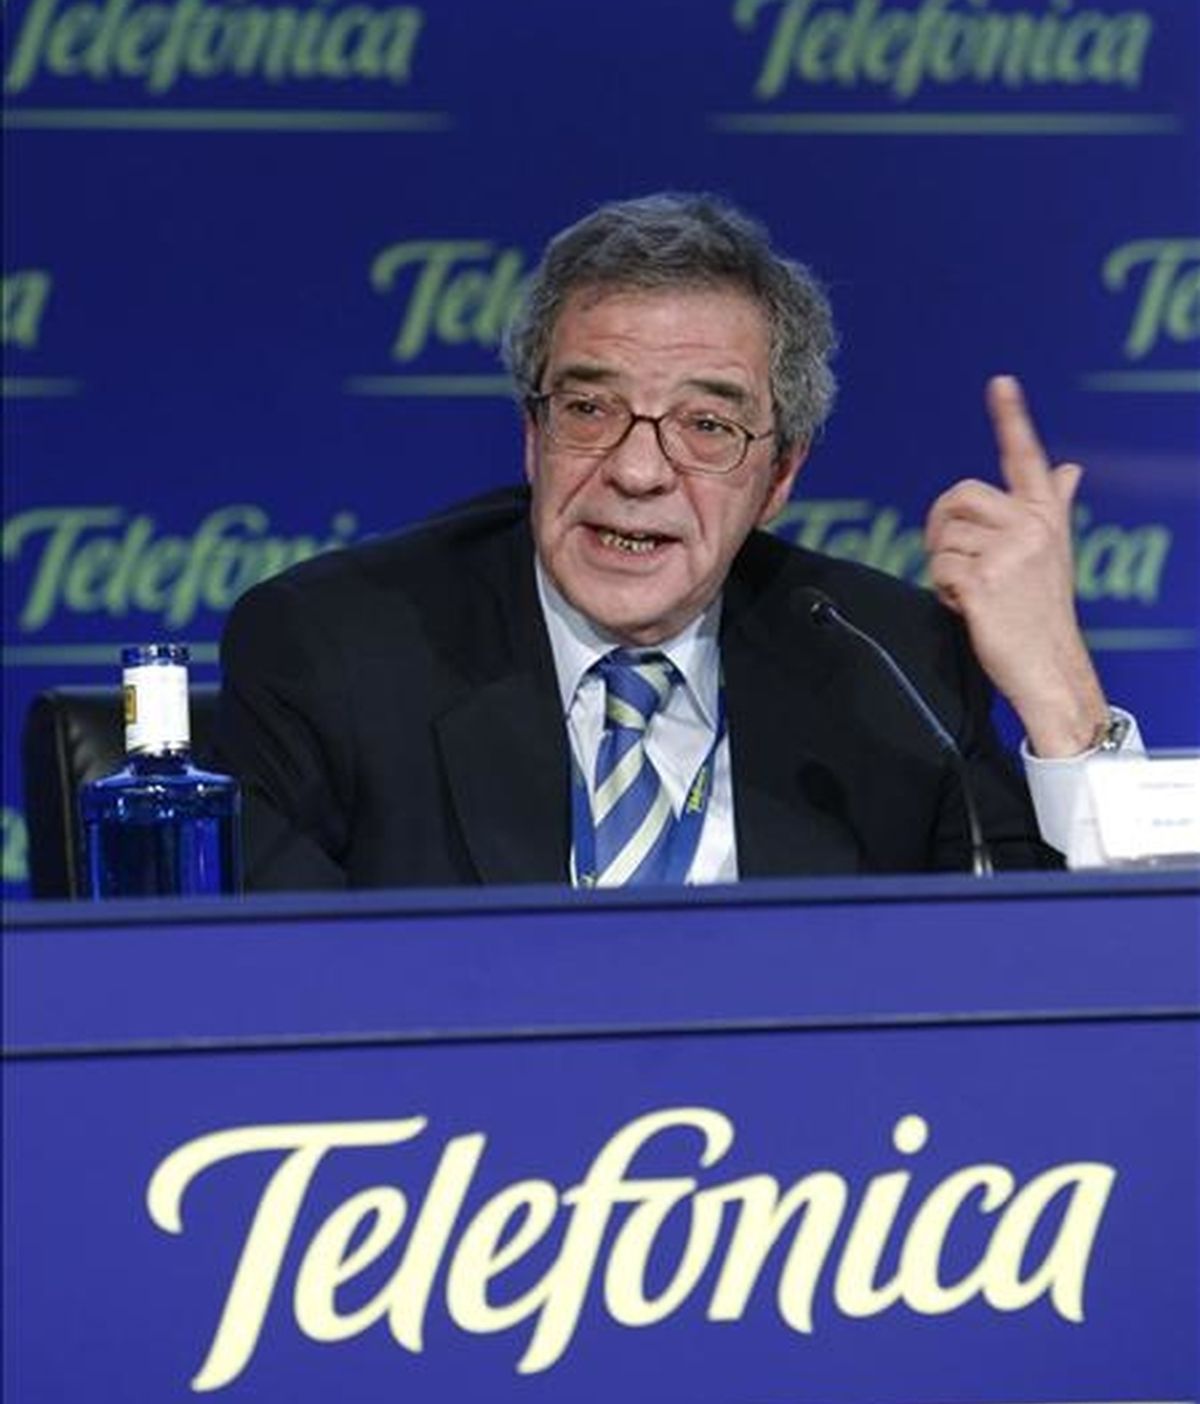 El presidente de Telefónica, César Alierta. EFE/Archivo